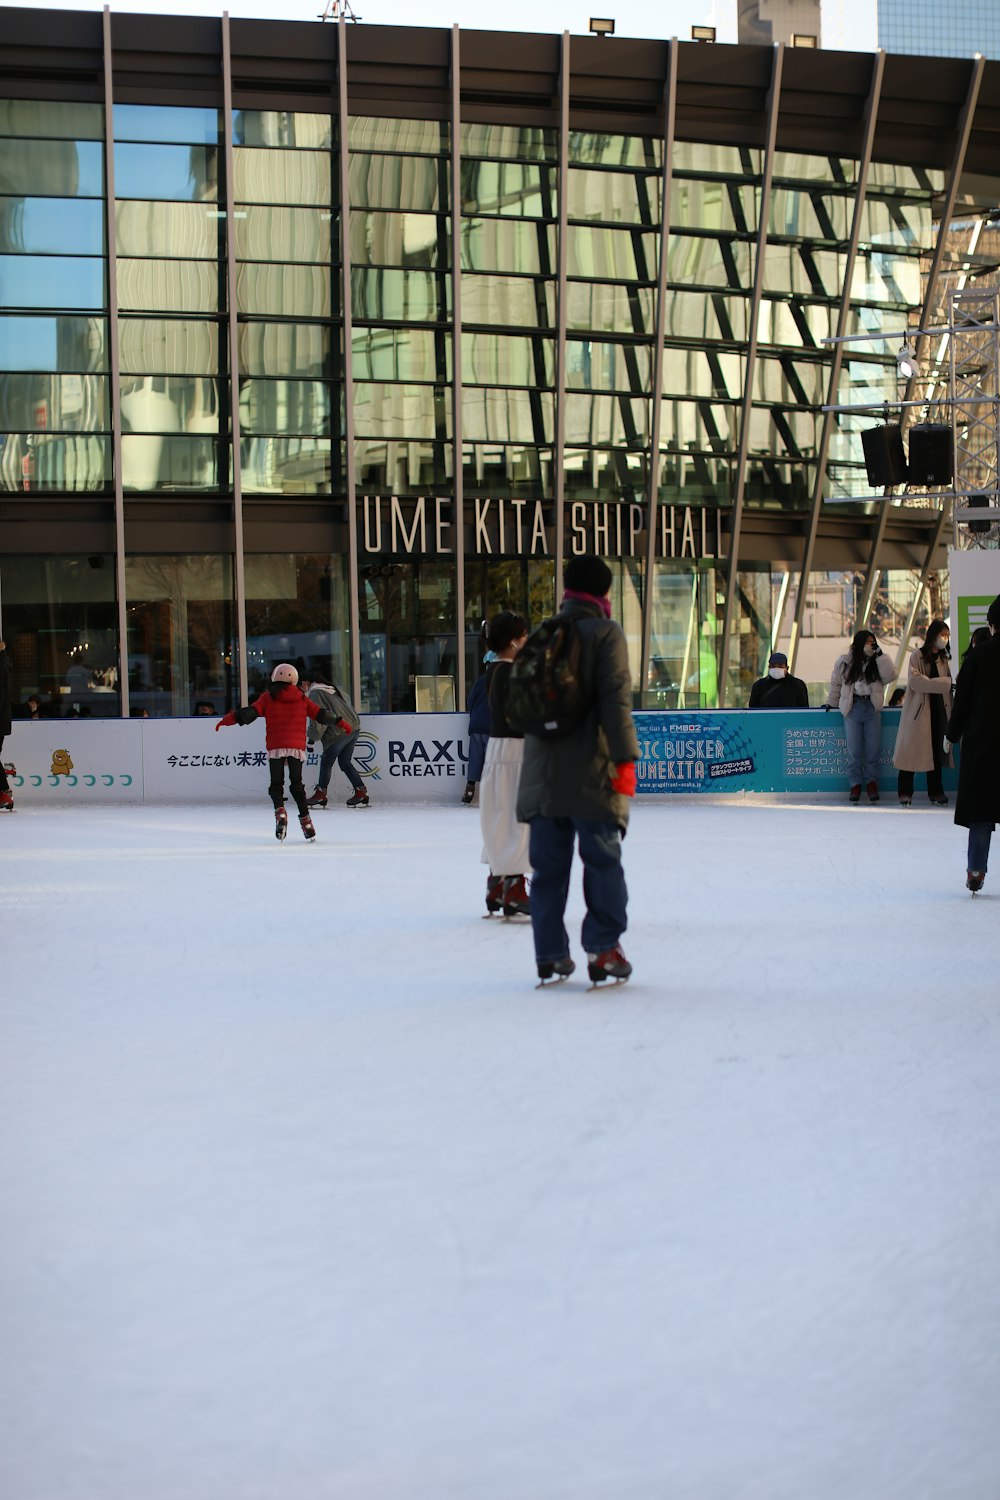 Un hombre montando una patineta por una pendiente cubierta de nieve